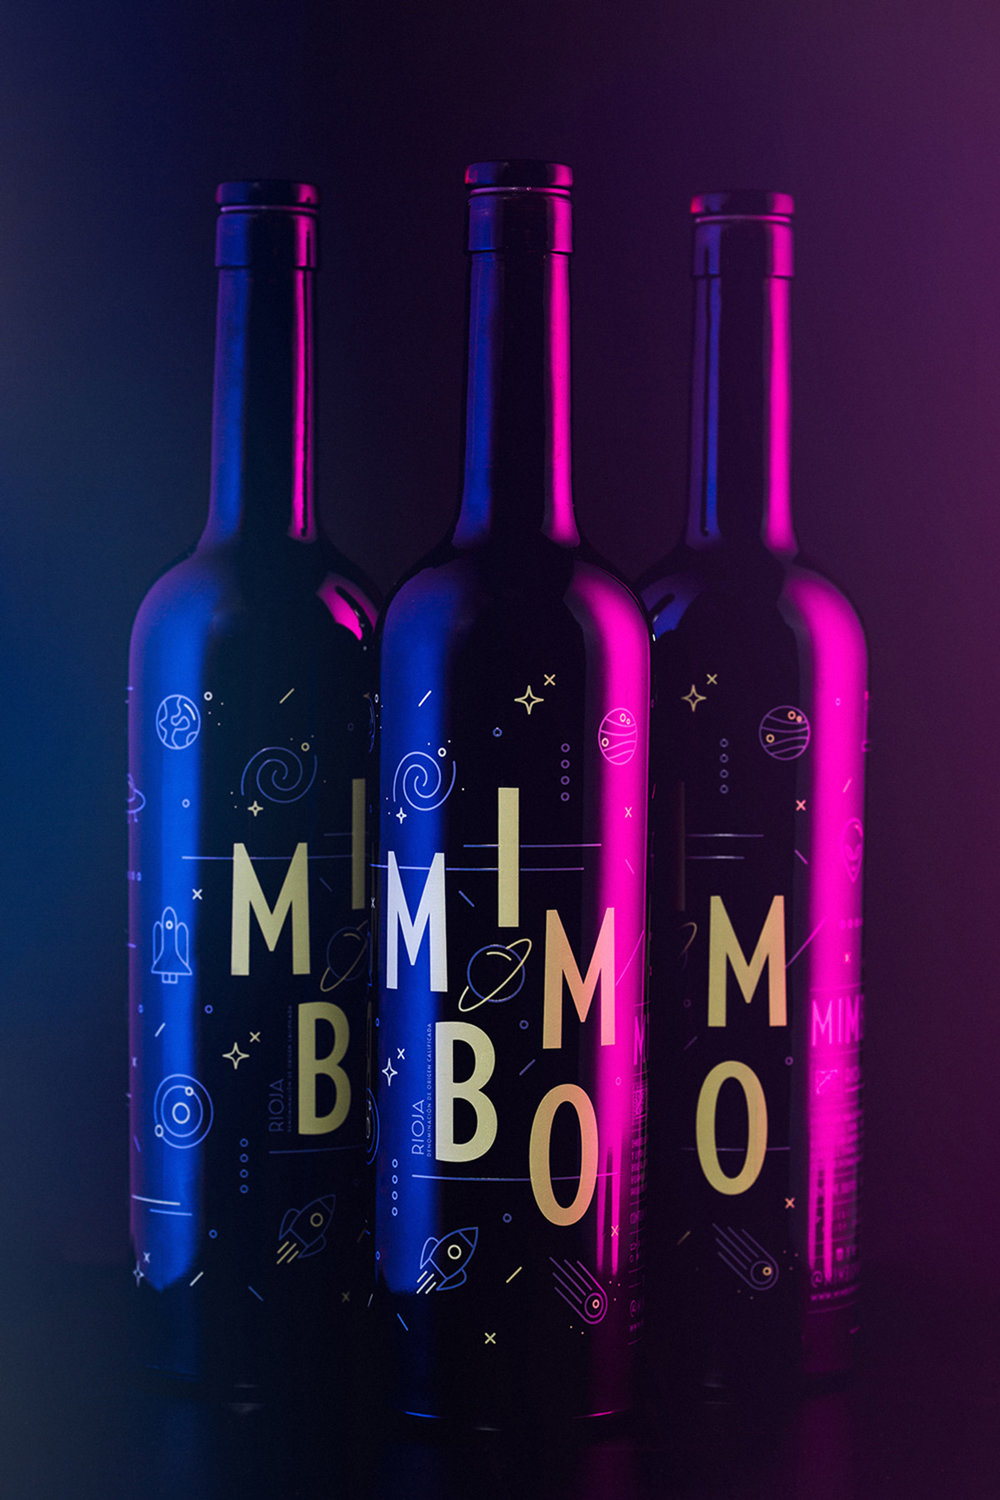 montalban-mimbo-packaging-wine01.jpg